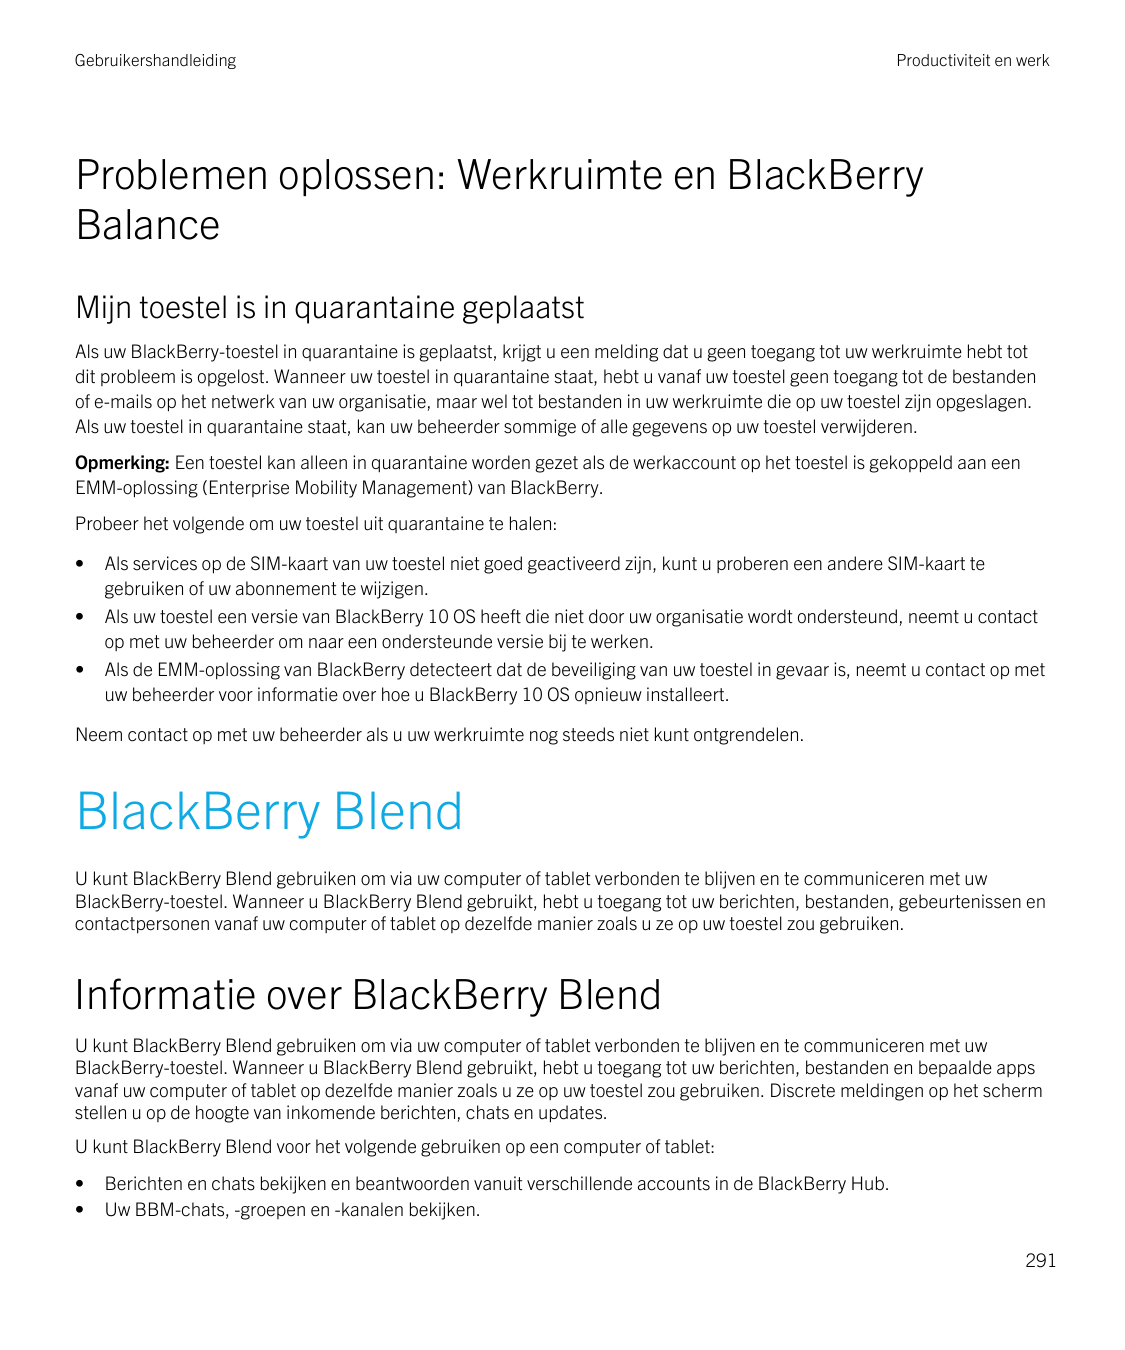 GebruikershandleidingProductiviteit en werkProblemen oplossen: Werkruimte en BlackBerryBalanceMijn toestel is in quarantaine gep